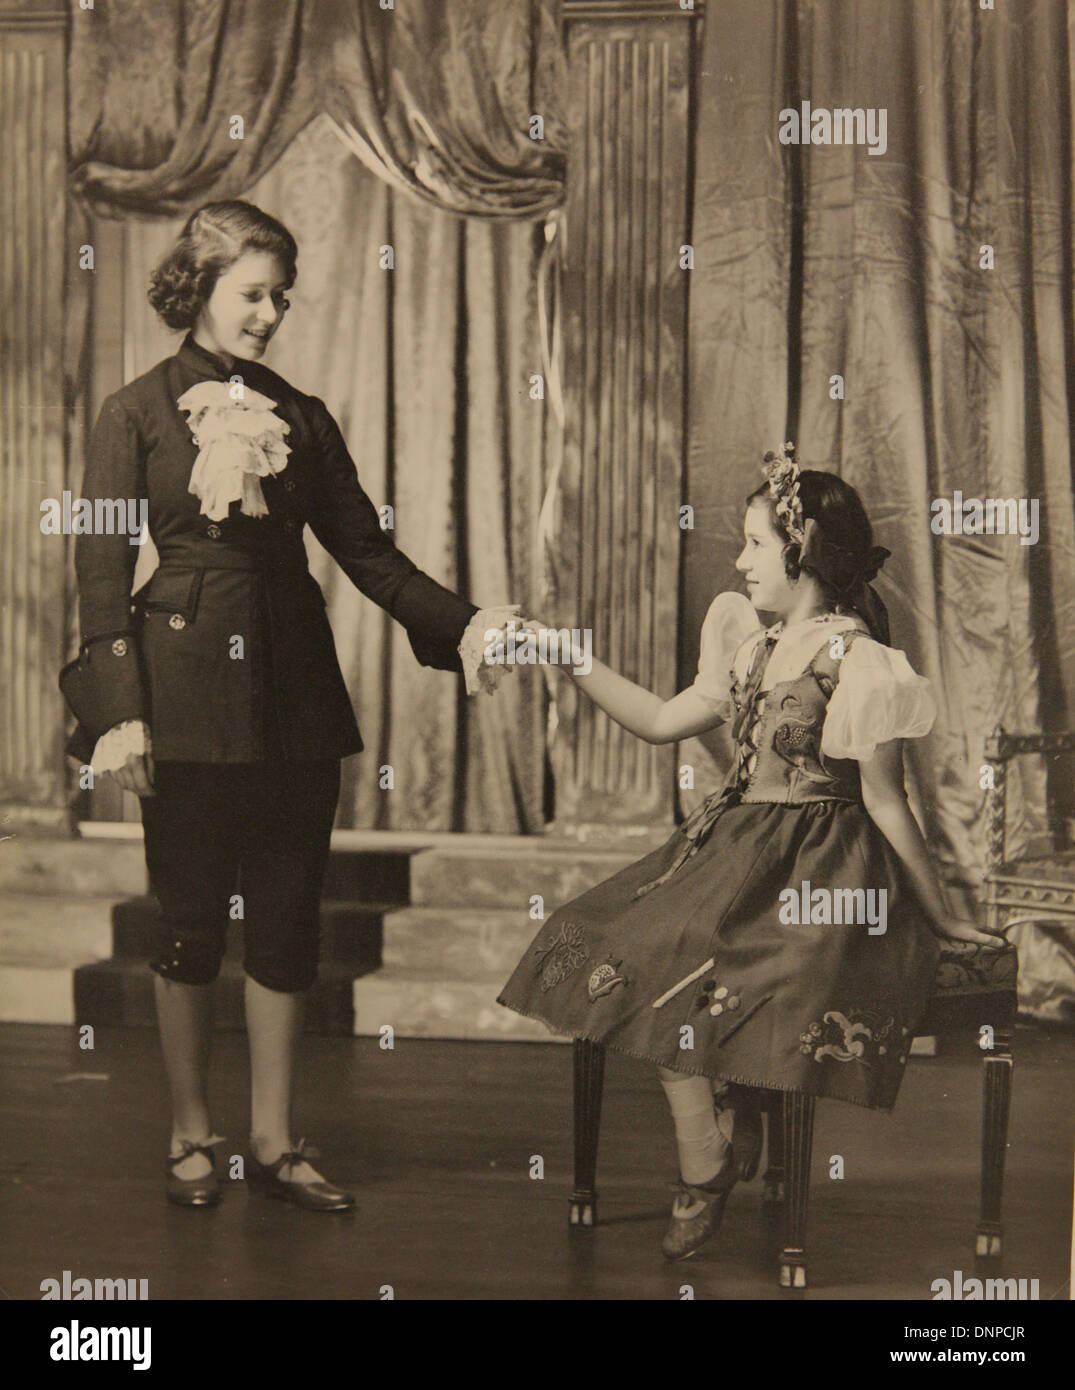 Recueillir des photographie de la princesse Elizabeth (à gauche) et de la princesse Margaret (à droite) dans la pièce de Cendrillon, 1941 Banque D'Images